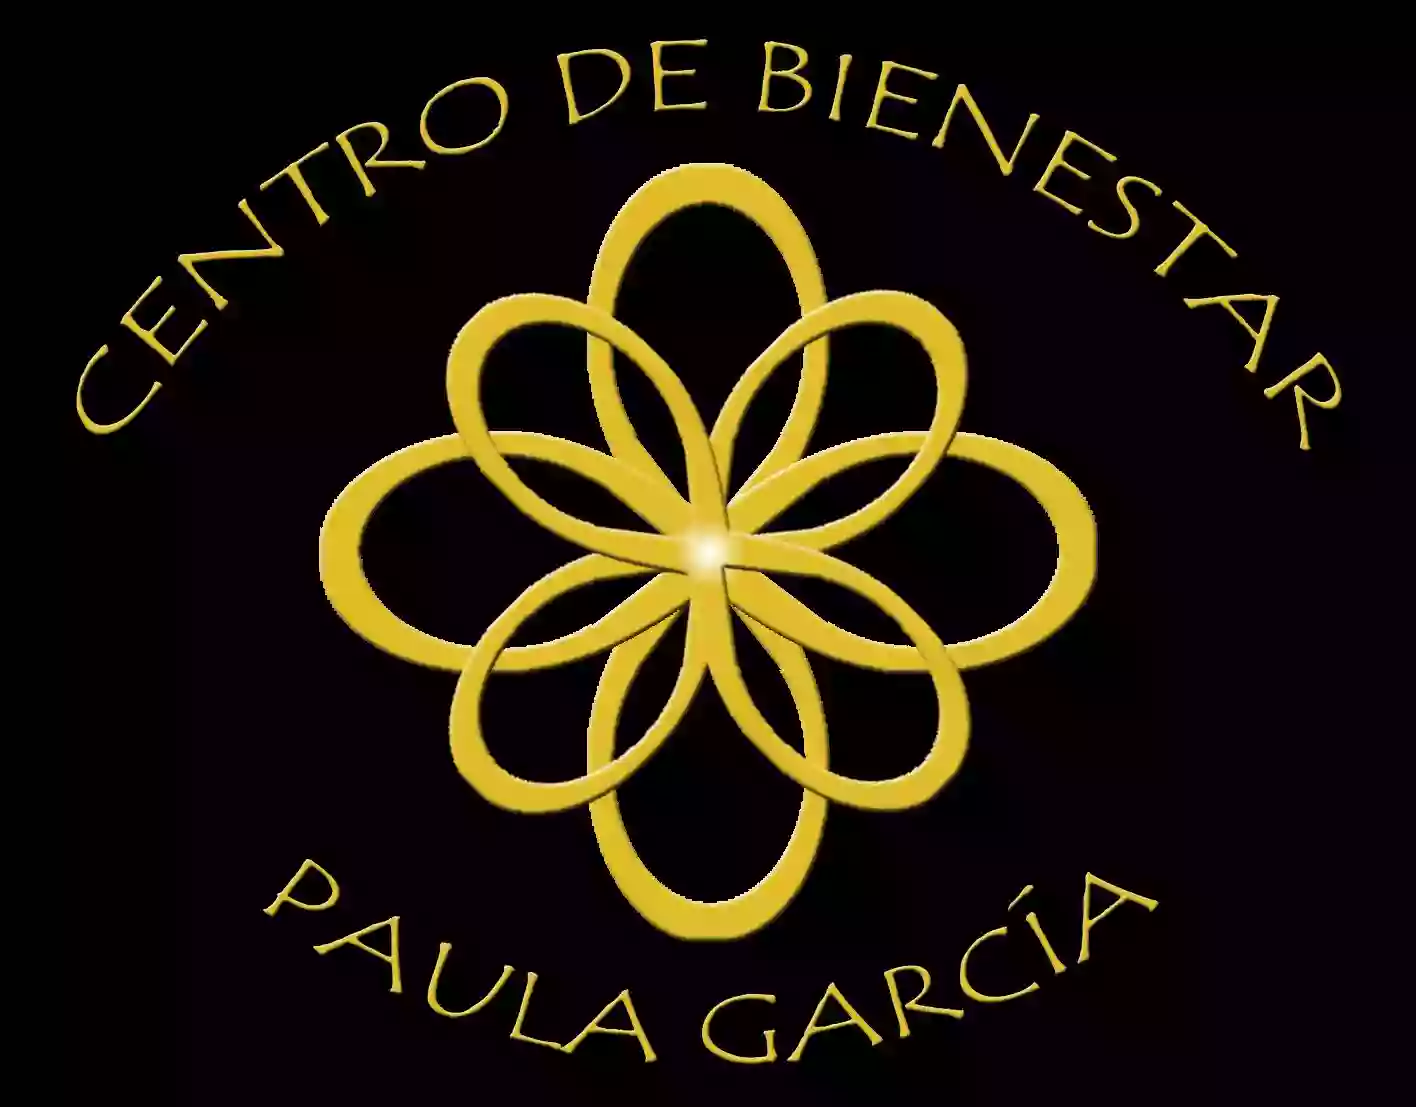 Centro de Bienestar Paula García